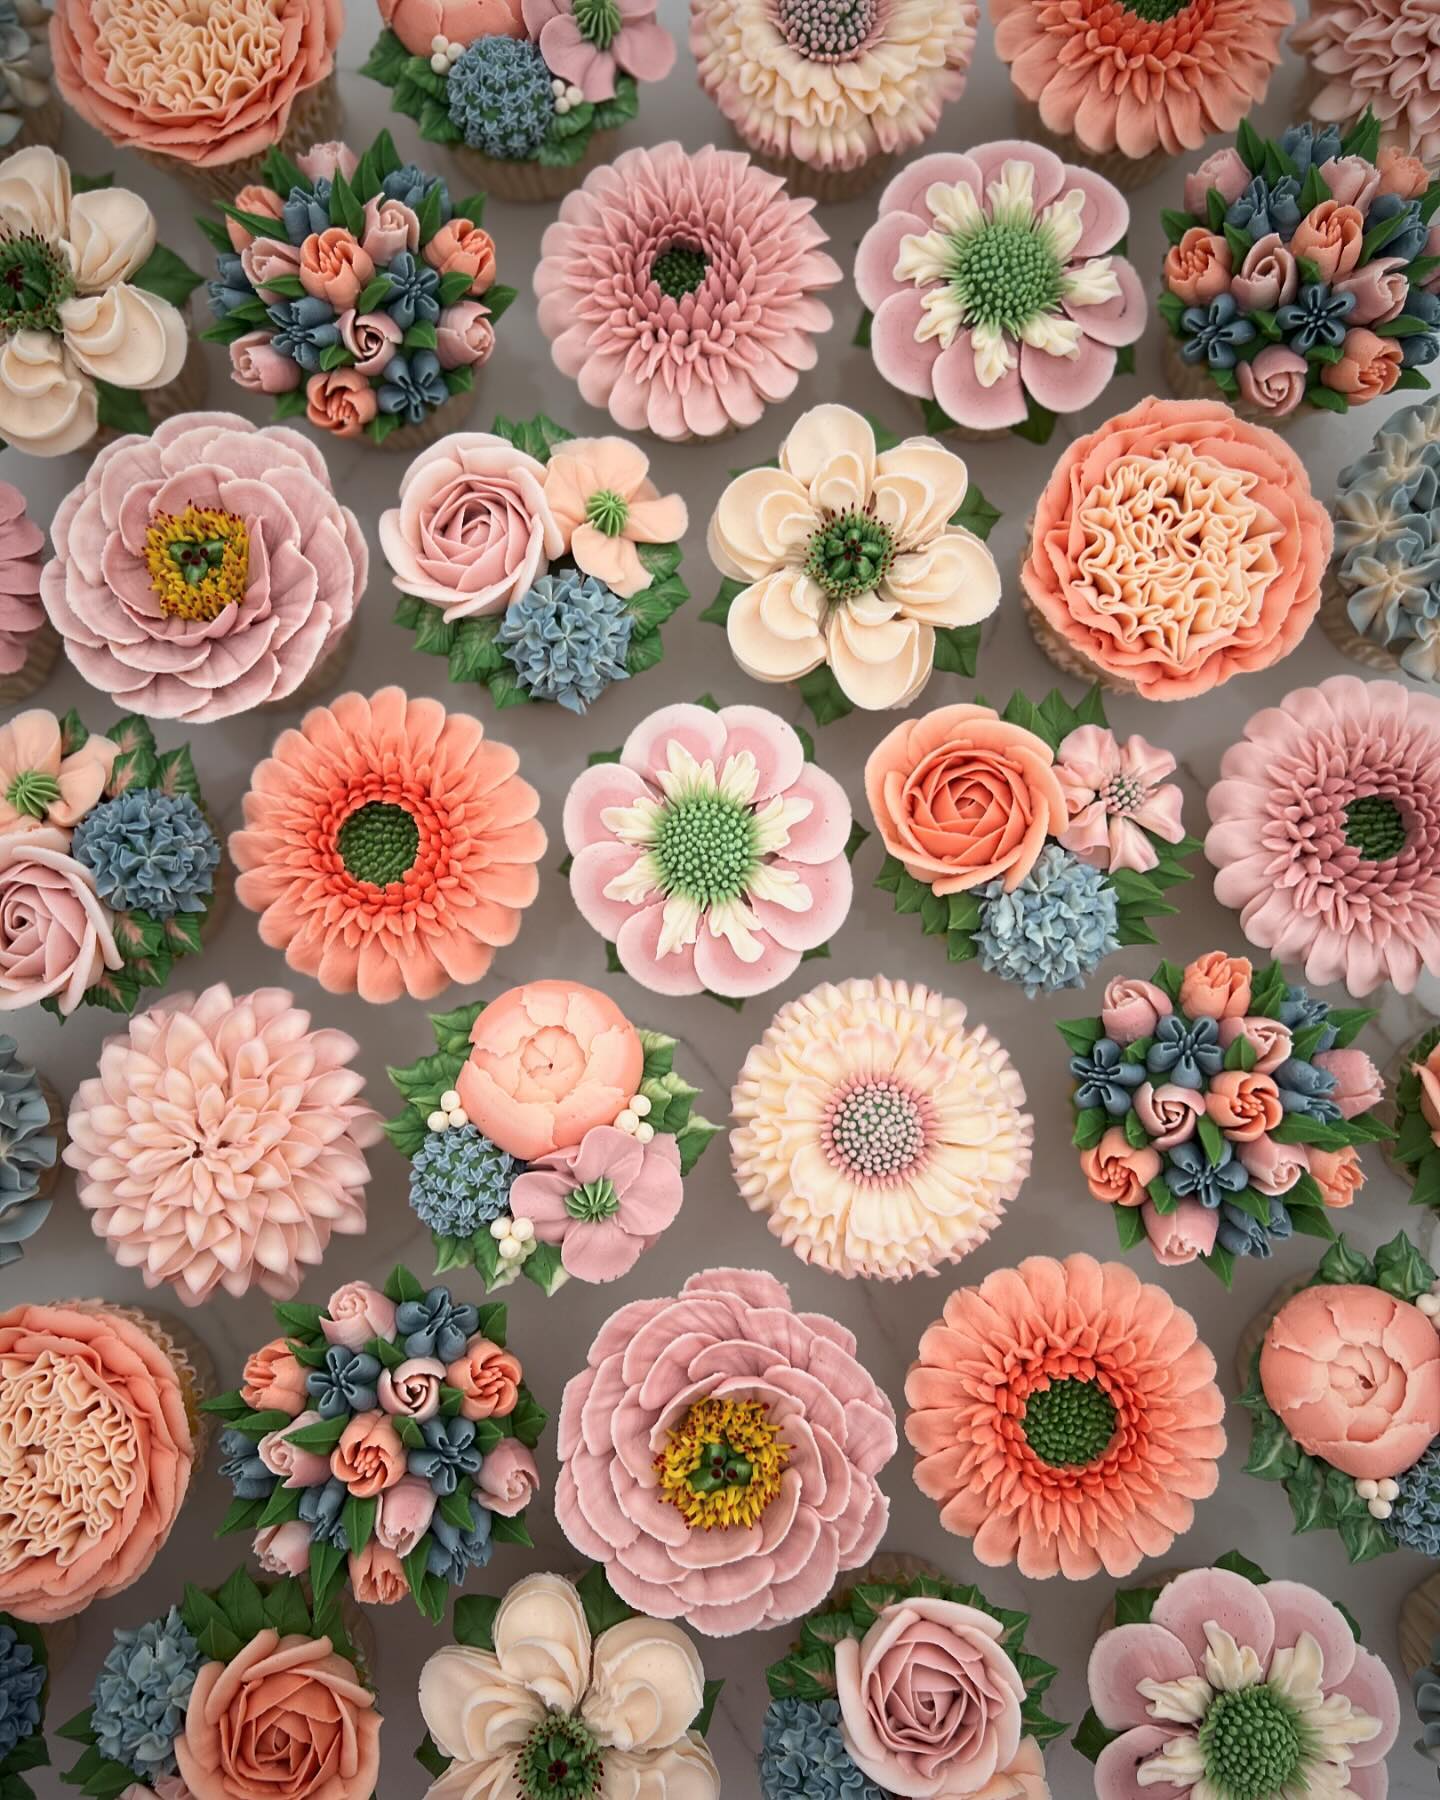 Τα ανθισμένα cupcakes με βουτυρόκρεμα που μοιάζουν με αληθινά λουλούδια και παχύφυτα